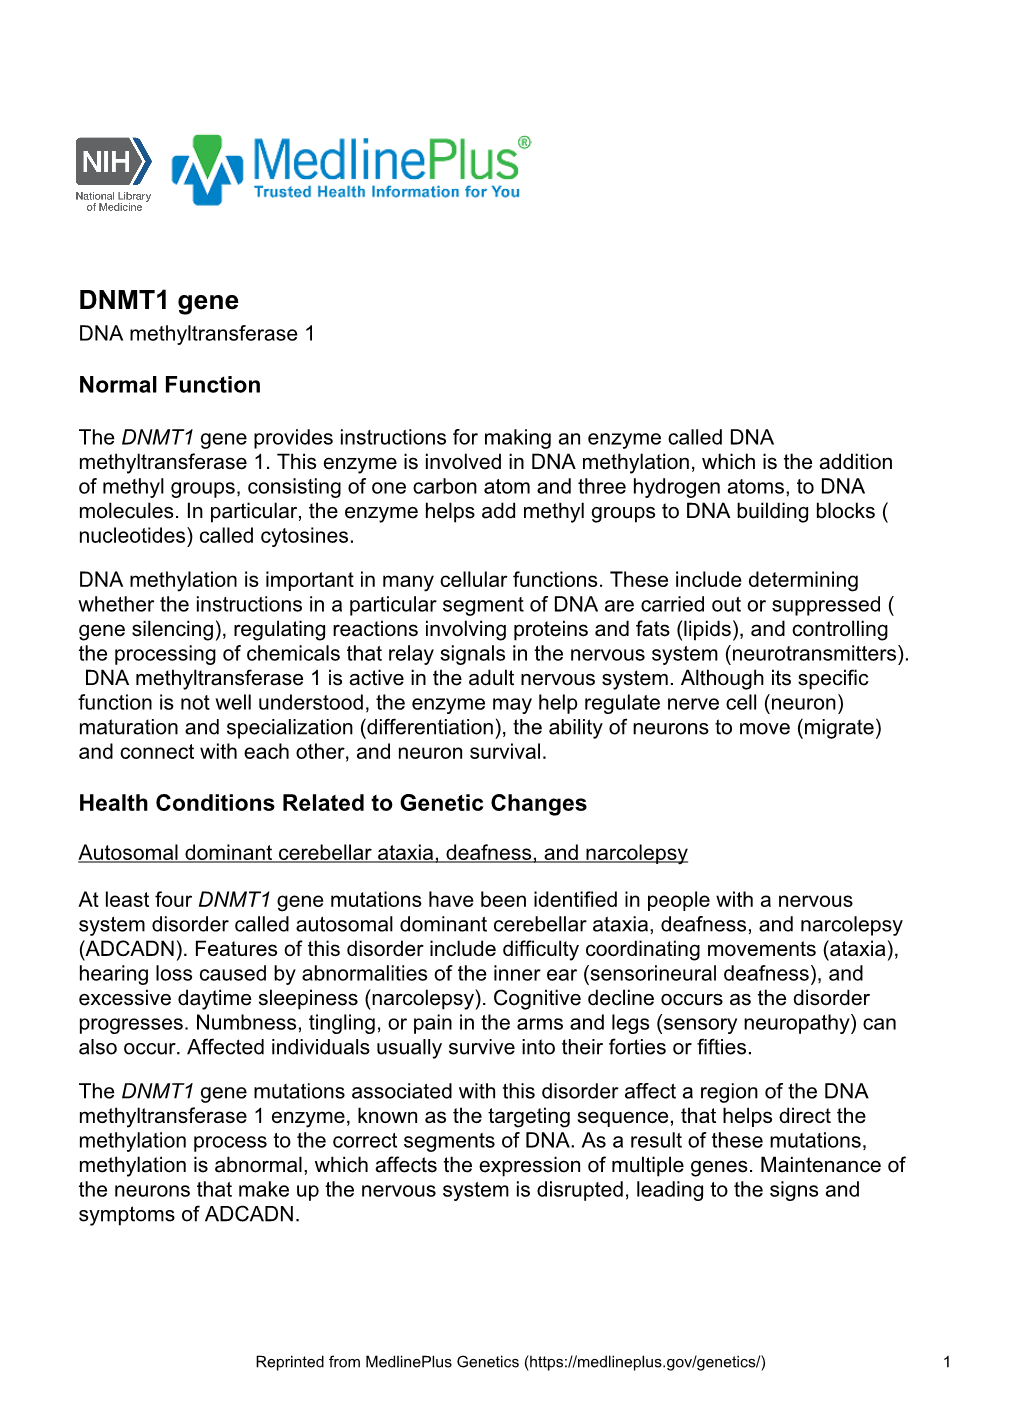 DNMT1 Gene DNA Methyltransferase 1